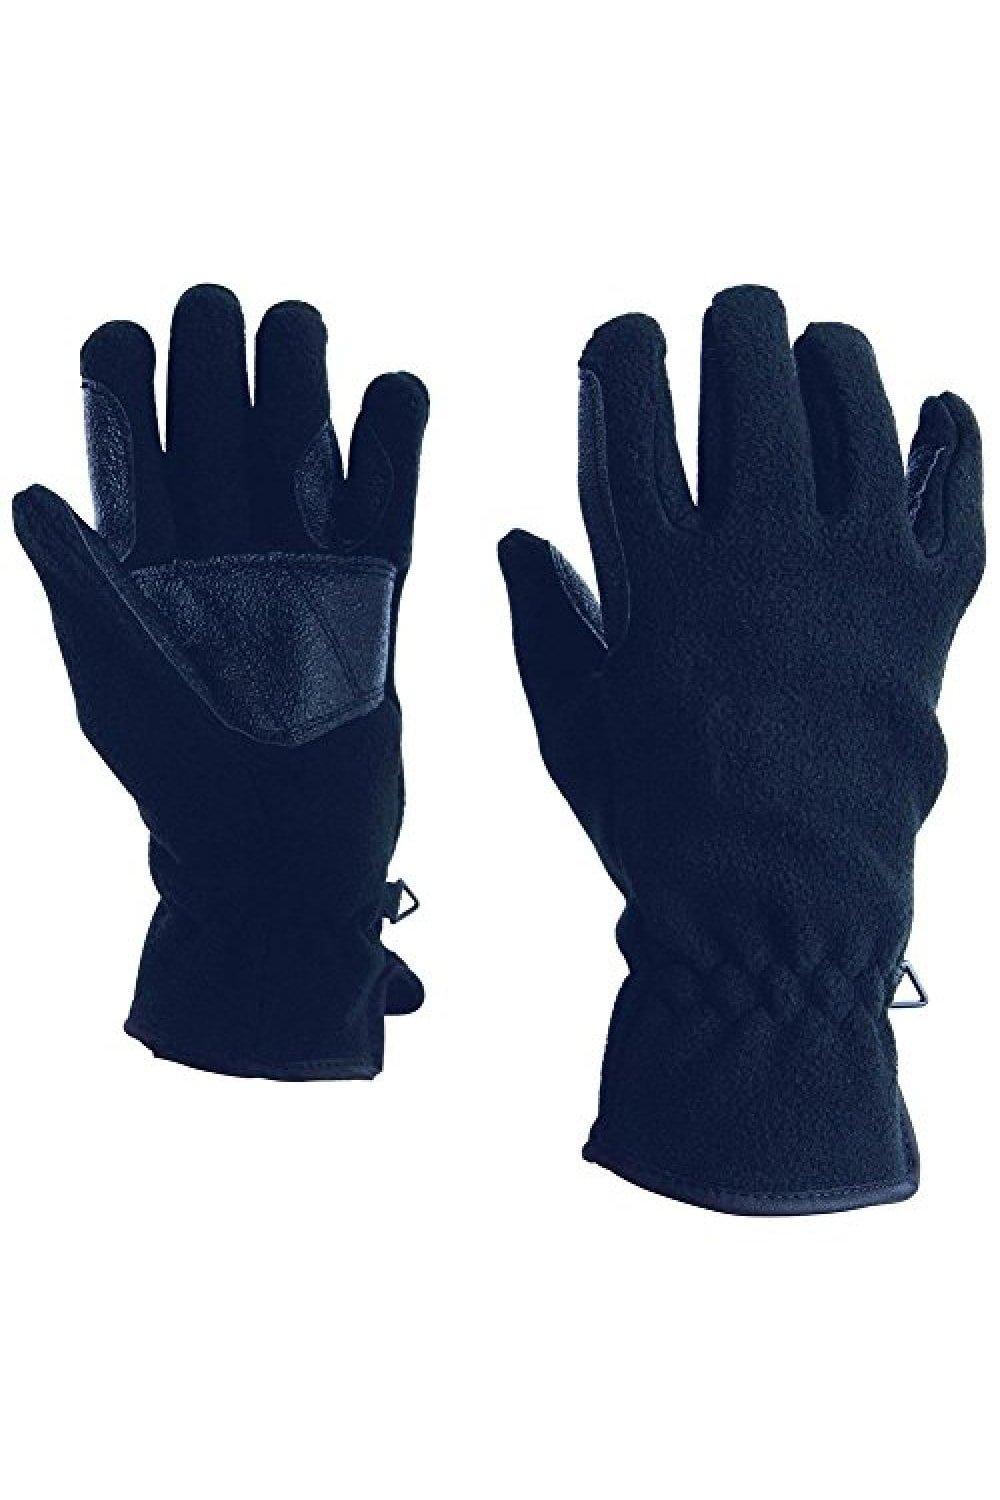 Флисовые перчатки для верховой езды Polar Dublin, темно-синий